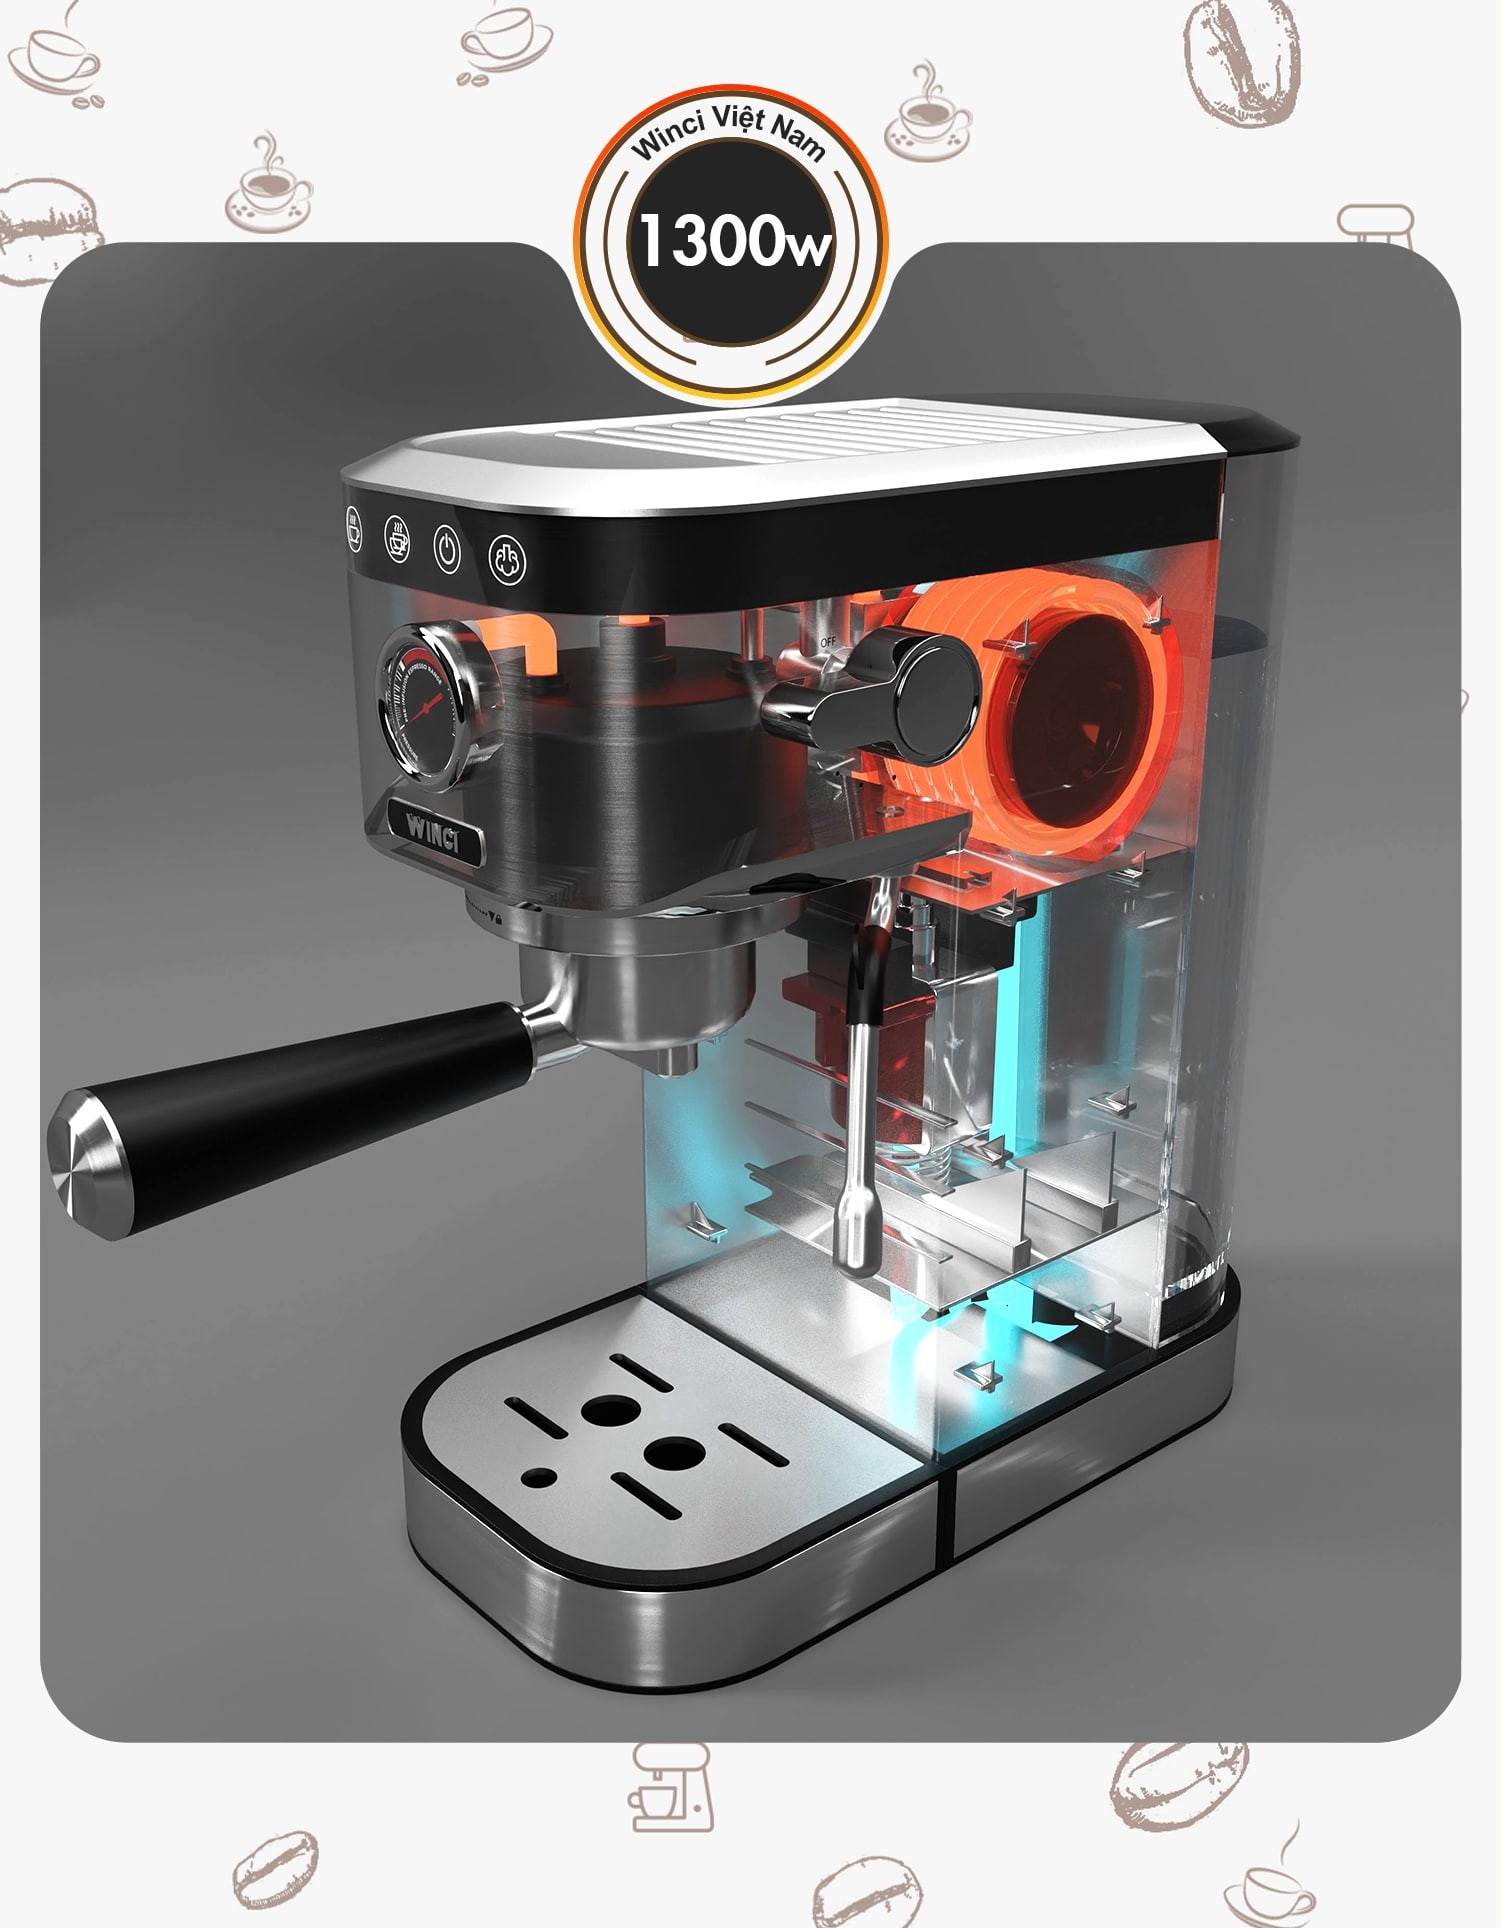 Công xuất máy pha cà phê Winci CM5100 là 1300w